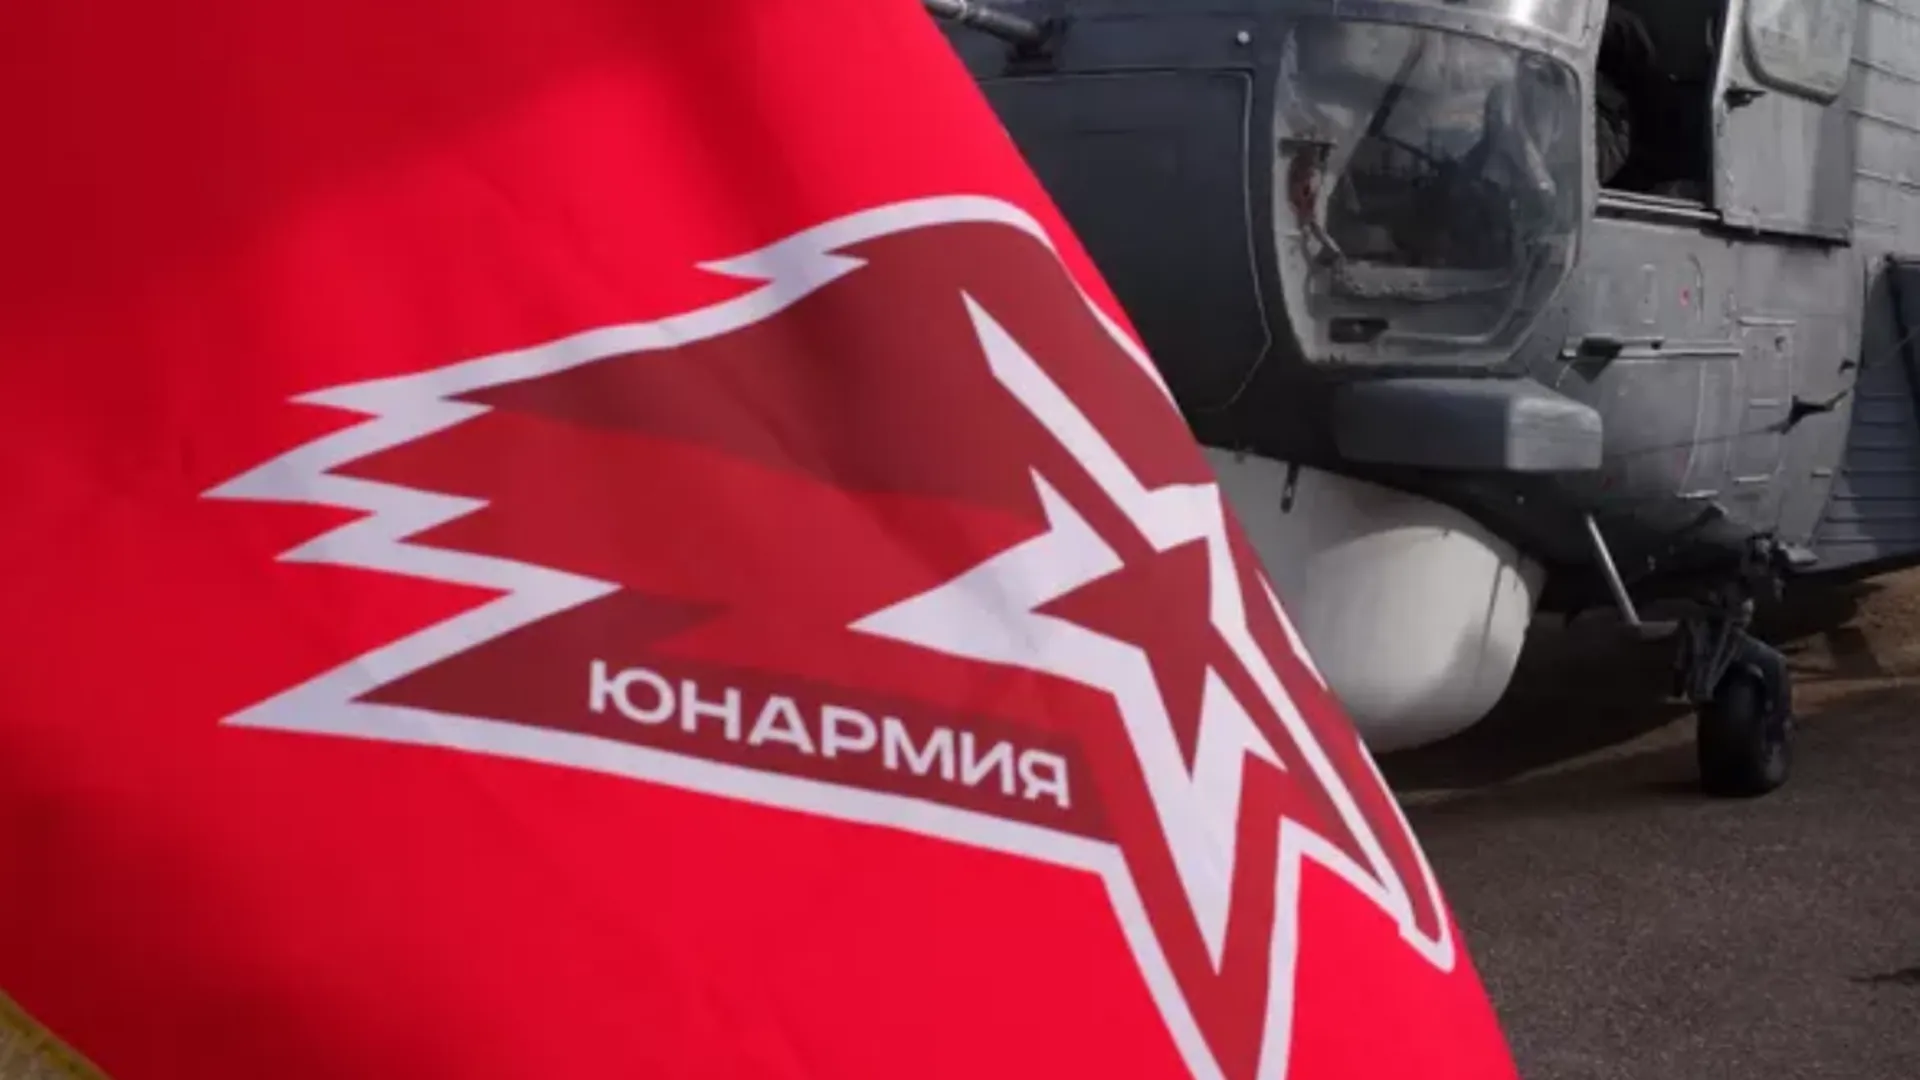 Юнармейцы приняли участие в военно-патриотической игре в Подольске